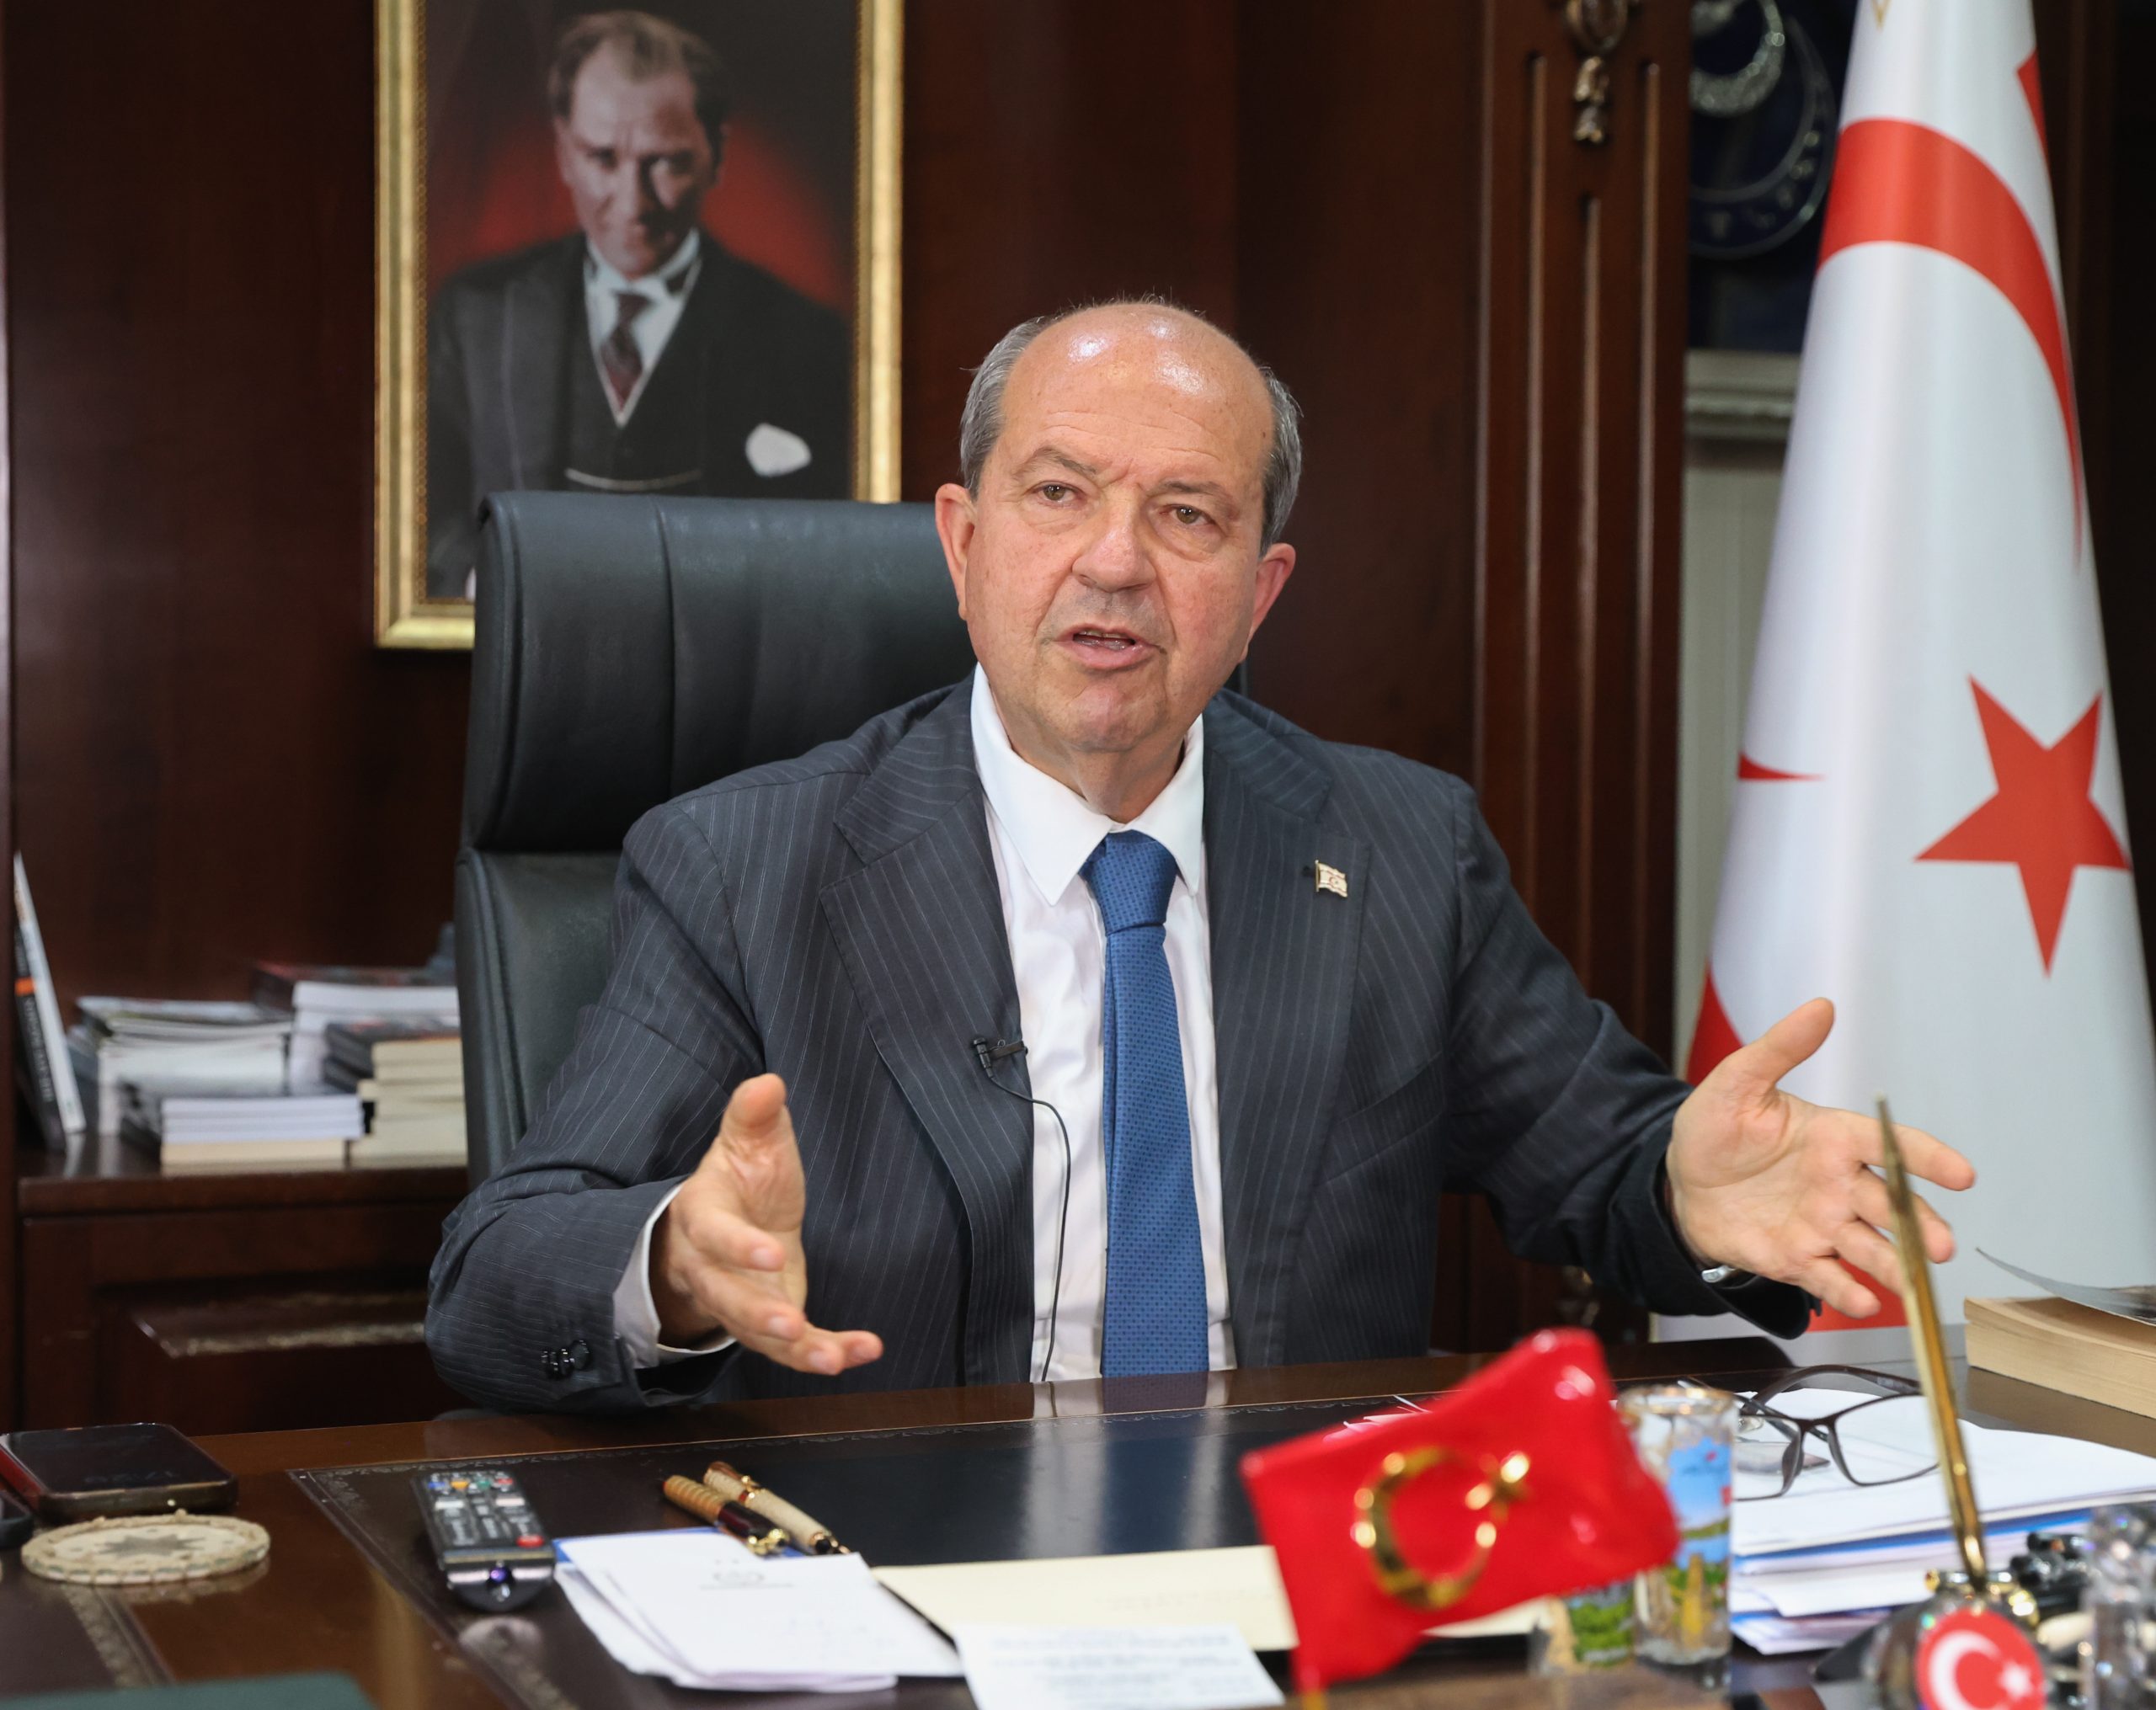 Cumhurbaşkanı Tatar: “AB’nin tutumunda, zorbalık, baskı, haksızlık ve hukuksuzluk var”